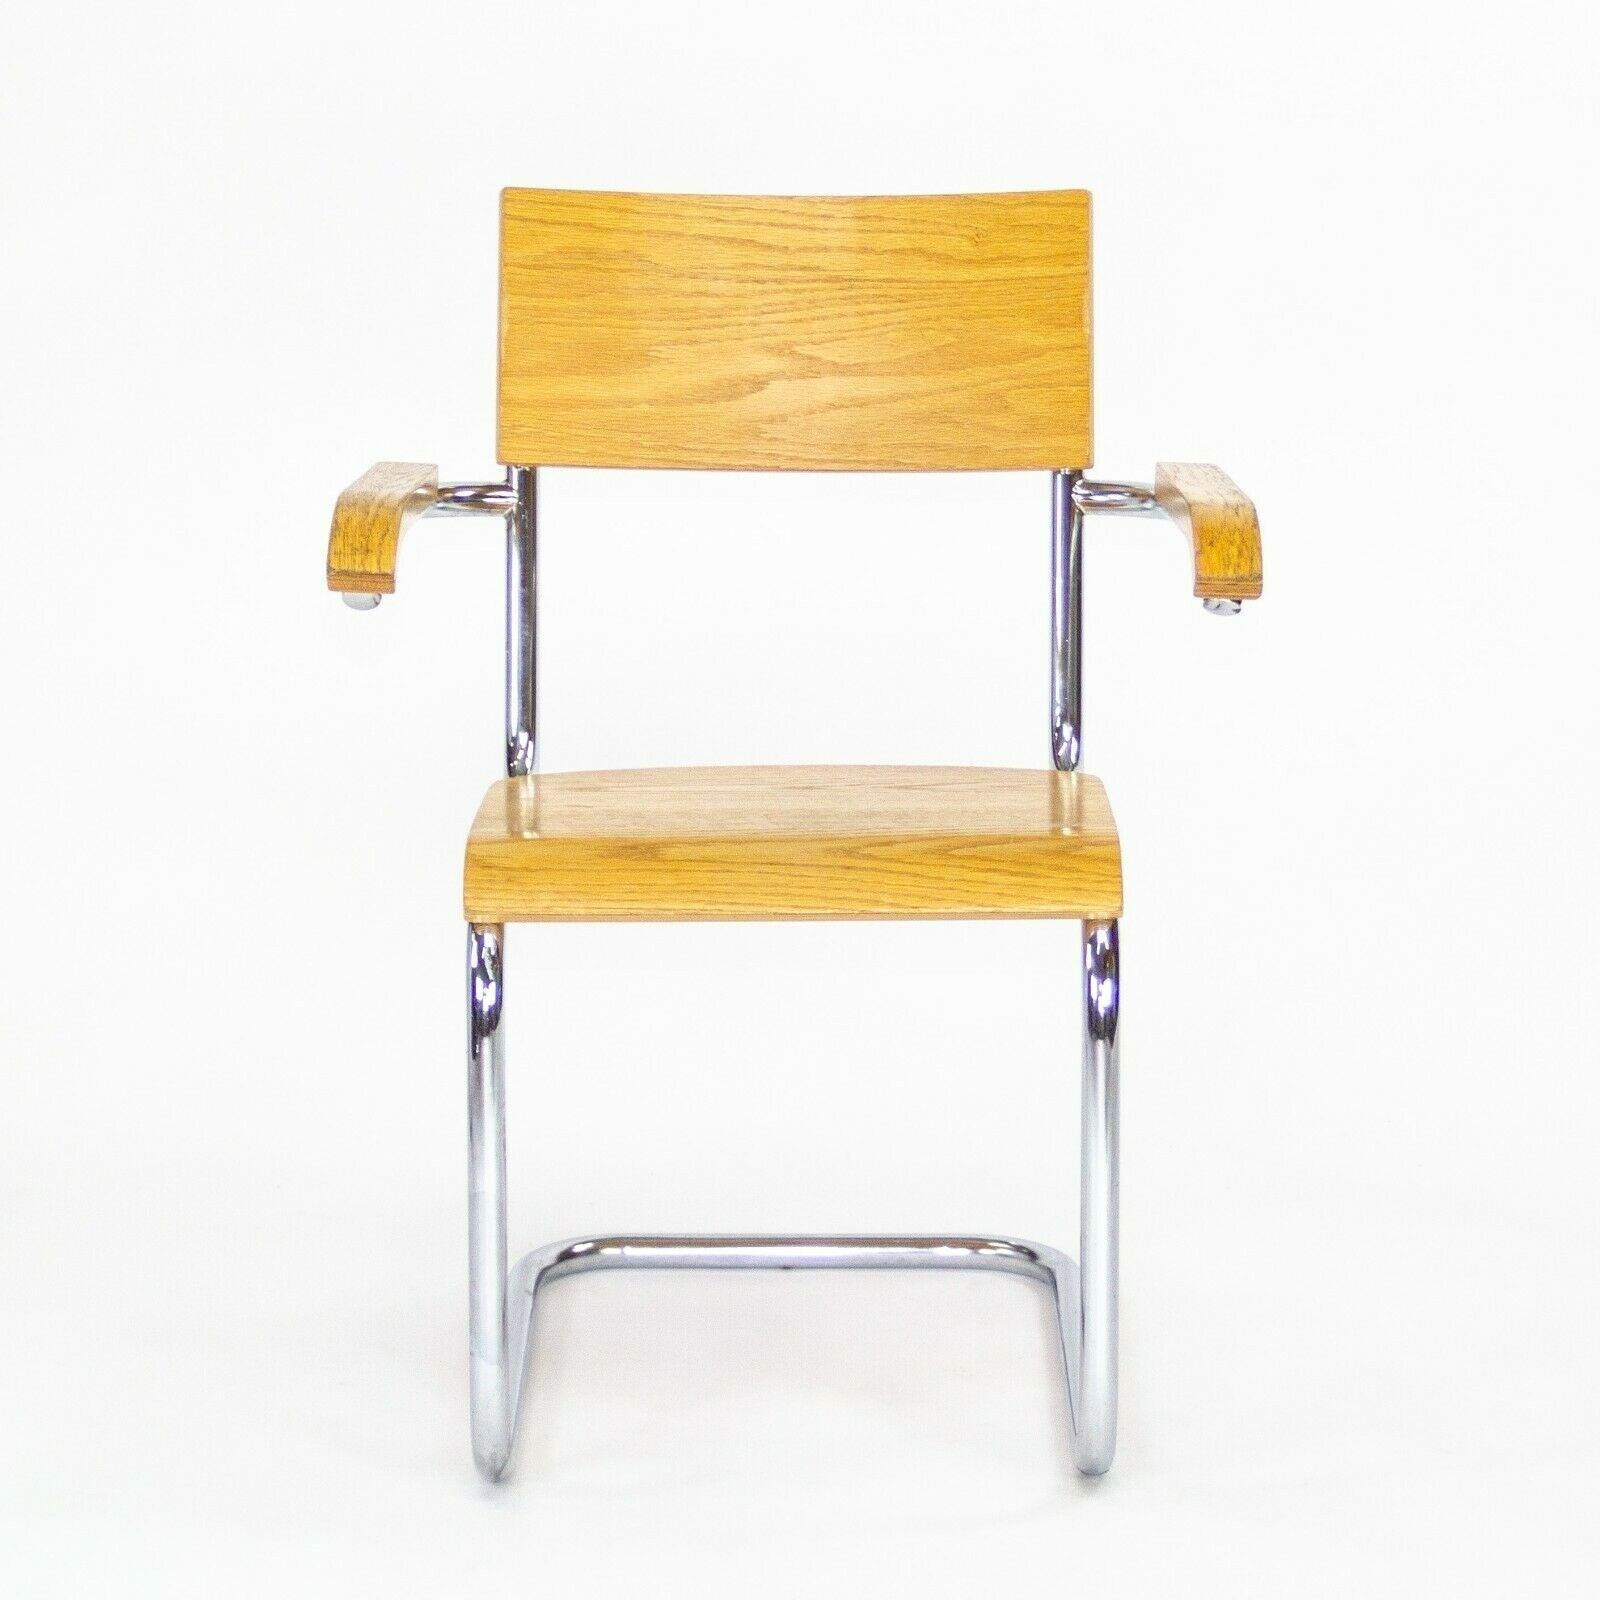 Zum Verkauf steht ein Satz von drei Freischwinger-Esszimmerstühlen mit Armlehnen, hergestellt von Thonet und vermutlich von Mart Stam entworfen. Thonet ist ein historisch bedeutendes Möbelunternehmen, das ursprünglich eine Reihe von innovativen, vom